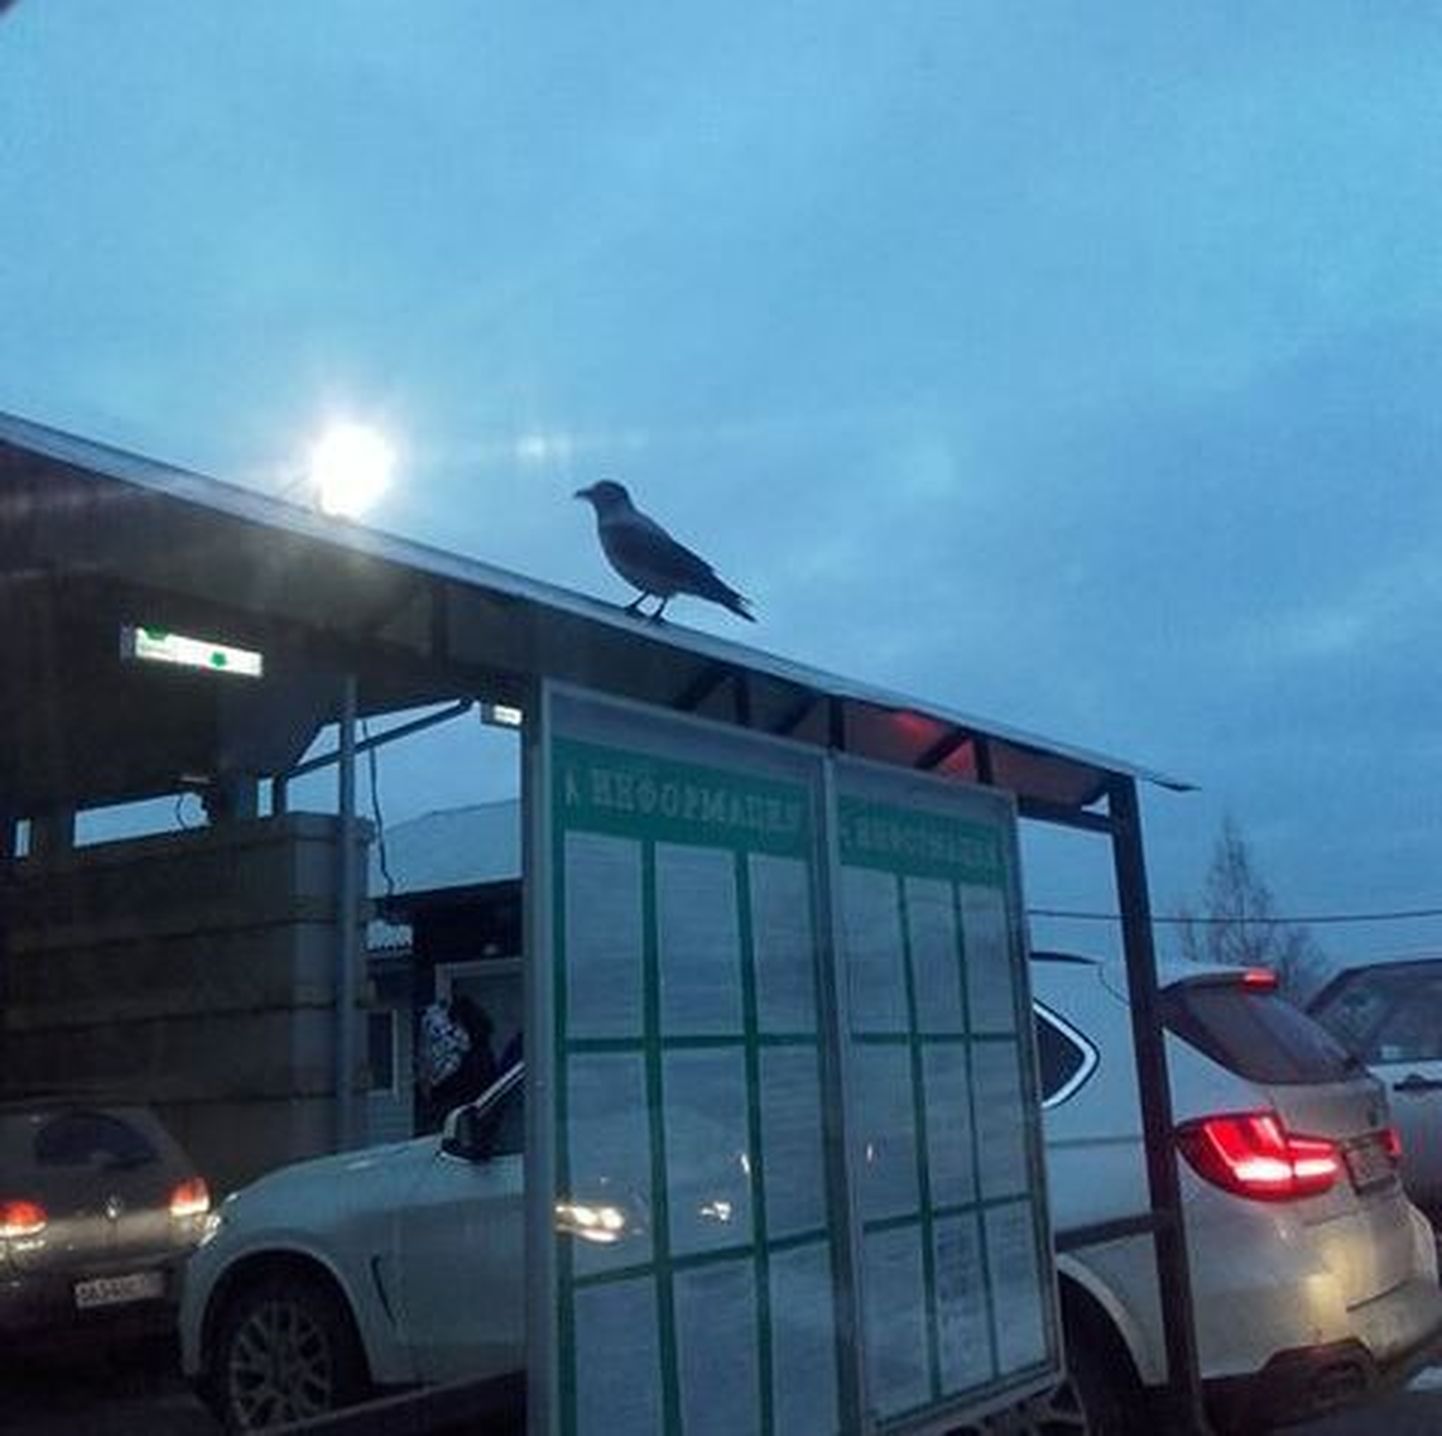 Очевидцы утверждают, что это та самая ворона, которая ворует на границе паспорта.